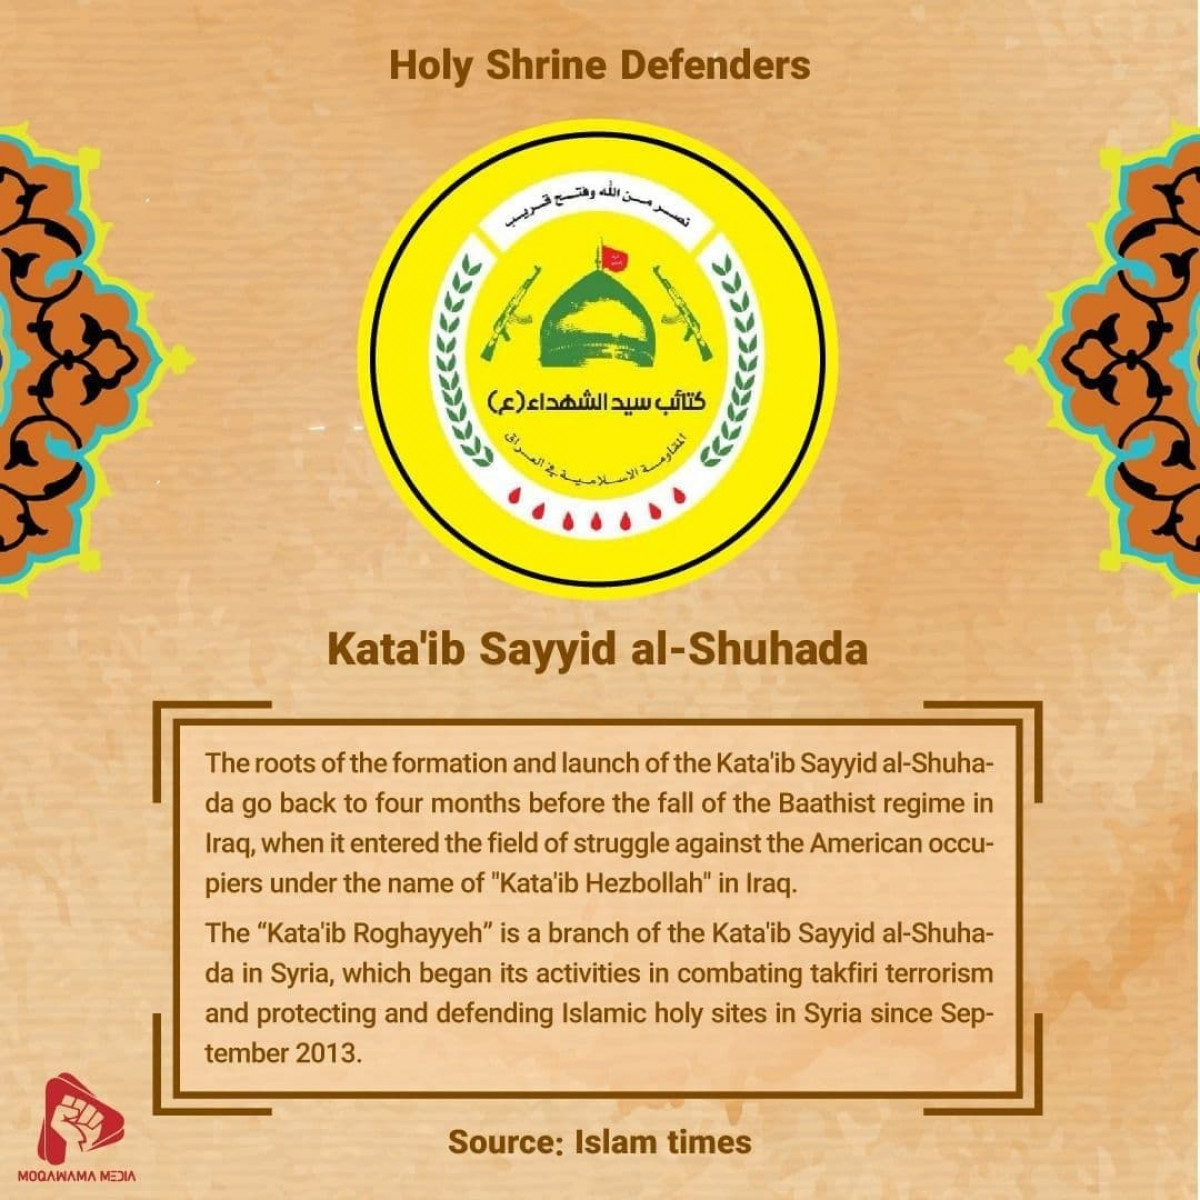 Holy Shrine Defenders: Kata'ib Sayyid al-Shuhada